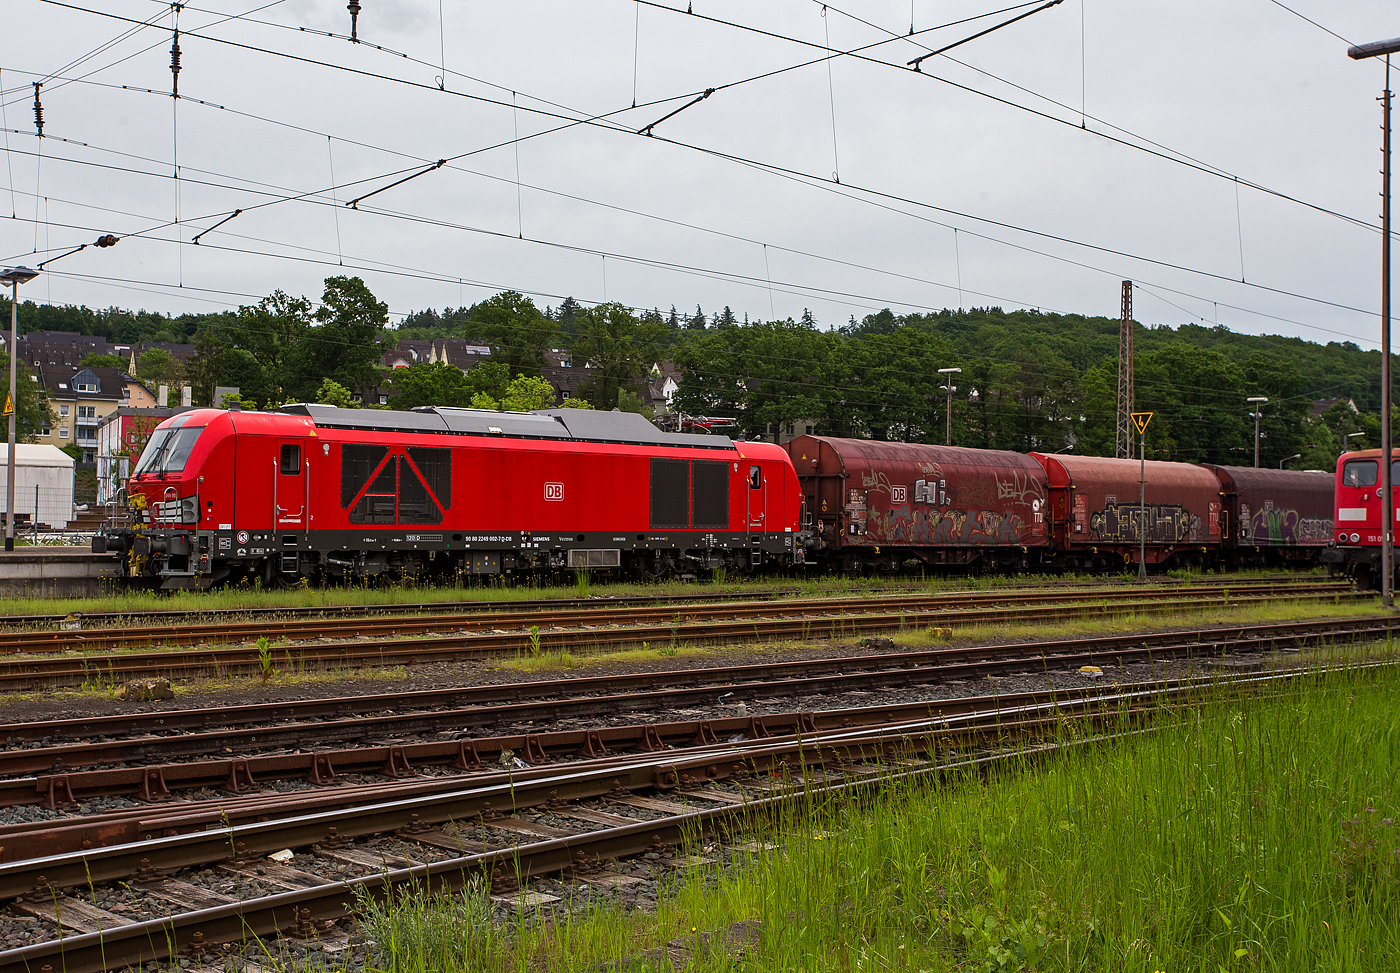 Ich war schon überrascht dass ich diese neuen Zweikraftlokomotiven „Siemens Vectron Dual Mode light“ (BR 249) der DB Cargo AG in Kreuztal nun schon sehen konnte und dann auch gleich 3 Stück. Am 21 Mai 2024 waren hier die 249 002-7 (0 80 2249 002-7 D-DB), die 249 003-5 (90 80 2249 003-5 D-DB) und die 249 006-8 (90 80 2249 006-8 D-DB).

Hier drückt die 249 002-7 (0 80 2249 002-7 D-DB) der DB Cargo AG einen Güterzug im Last-Mile-Modus (mit Dieselantrieb) vom Abstellbereich beim Bahnhof Kreuztal zum Rangierbahnhof (Rbf Kreuztal). Da hier Oberleitungen vorhanden sind, wäre eigentlich der Last-Mile-Modus (Dieselantrieb) nicht nötig, aber vermutlich war es ein Test- bzw. Schulungsbetrieb.

Die Vectron Dual Mode light 249 002-7 der Baureihe 249 wurden 2022 von Siemens Mobility GmbH in München-Allach unter der Fabriknummer 23060 gebaut. Die Lok war von Ende Mai 2022 erst durch Siemens Mobility GmbH, als 90 80 2249 002-7 D-SDEHC registriert/eingestellt. Erst nach der Abnahme durch die DB Cargo und den Verkauf an diese im März 2024 wurde sie als 90 80 2249 003-5 D-DB eingestellt. Die Loks der Baureihe 249 haben die Zulassung für Deutschland und eine Höchstgeschwindigkeit von 120 km/h.

Diese Lokomotivbaureihe wird man bald auf deutschen Gleisen wohl oft sehen können. Denn die DB Cargo erneuert seine Rangier- und Strecken-Lokflotte und beschafft neue Zweikraftlokomotiven der BR 249, als Ersatz für die älteren Diesellokomotiven der Reihe 294 (V 90). Es wurde Rahmenvertrag mit dem Hersteller Siemens Mobility über bis zu 400 Fahrzeuge, die einem Investitionsvolumen von deutlich über einer Milliarde Euro entsprechen, angeschlossen. Geliefert werden Lokomotiven vom Typ Vectron Dual Mode light mit spezifischen Anpassungen für das von DB Cargo geplante Einsatzspektrum. 
Zunächst bestellt die DB Cargo 150 Loks der Baureihe 249. Diese DB Loks sind aber stark modifiziert, so beträgt bei ihnen die Achslast maximal 21 t (statt 22,5 t). Sie besitzen in den Führerständen jeweils einen zusätzlichen Seitenfahrschalter sowie ein Schwanenhalsmikrofon. Weitere Unterschiede sind die Ausrüstung mit Rangierkupplungen Rk900, Rangiertritten neben den Puffern, zusätzlichen Überwachungskameras zur Überwachung des Raumes zwischen den Lokomotiven und Warnleuchten für den Betrieb mit Funkfernsteuerung.

Die Loks der Baureihe 249 (Vectron Dual Mode light) besitzen gegenüber der BR 248 einem kleineren Dieselmotor von Cummins (QST 30-L) mit einer Leistung von 950 kW (anstatt des MTU 16V 4000 R84 mit 2.400 kW Leistung). Allein durch den kleineren Motor wurden ca. 5,5 t Gewicht eingespart.  So ist die speziell für die Anforderungen von DB Cargo optimierte „Vectron Dual Mode light“ imehrere Tonnen leichter als herkömmliche Modelle und kann so auch auf Nebenstrecken und Gleisanschlüssen mit geringerer Traglast eingesetzt werden. Diese Eigenschaften machen sie besonders geeignet für den Einzelwagenverkehr, der durch die Reduzierung des Lokwechsels schneller und effizienter wird-

TECHNISCHE DATEN der Vectron Dual Mode light (BR 249)
Einsatzbereich: Güterverkehr und Zugbildung
Spurweite: 1.435 mm (Normalspur)
Achsformel: Bo'Bo'
Länge über Puffer: 20 510 mm
Drehzapfenabstand: 10.800 mm
Achsabstand im Drehgestell: 2.700 mm
Breite: 3.020mm
Höhe:  4.220 mm
Raddurchmesser : 1.100 mm (neu) / 1.020 mm (abgenutzt)
Gewicht:  84 t (bei vollen Vorräten)
Achslast: 21 t
Spannungssysteme (bei E-Betrieb): 15 kV, 16,7 Hz
Dieselmotor: Gedrosselten  V12-Zylinder -Viertakt-Dieselmotor mit Turboaufladung und Ladeluftkühlung, vom Typ Cummins QST 30-L
Dieselmotorleistung an der Kurbelwelle (gedrosselt): 950 kW (1.291 PS)
max. Dieselmotorleistung (Kw): 1.119 kW (1.521 PS)
Motorhubraum 30,5 Liter (Bohrung 140 mm x Hub 165 mm)
Dieselmotor Nenndrehzahl: 2.100 U/min
Dieselmotor Motorgewicht (trocken): 3.555 kg
Max. Leistung am Rad E-Antrieb: 2.210 kW  (3.005 PS)
Max. Leistung am Rad Dieselbetrieb: 750 kW (1.020 PS) / max. 926 kW möglich
Höchstgeschwindigkeit:120 km/h
Antriebsart: elektrisch oder dieselelektrisch
Kraftübertragung: Teilabgefederter Antrieb (Ritzelhohlwellenantrieb)
Kraftstoffbehälter Nutzvolumen: 1.500 Liter
Anfahrzugskraft:  300 kN
Elektrische Bremskraft: 150 kN
Elektrische Bremsleistung (am Rad): E-Betrieb 2.210 kW / Dieselbetrieb 1.000 kW
Doppeltraktion: Über WTB ÖBB mit typgleichen Fahrzeugen 
Zugsicherung: PZB / für ETCS vorbereitet
